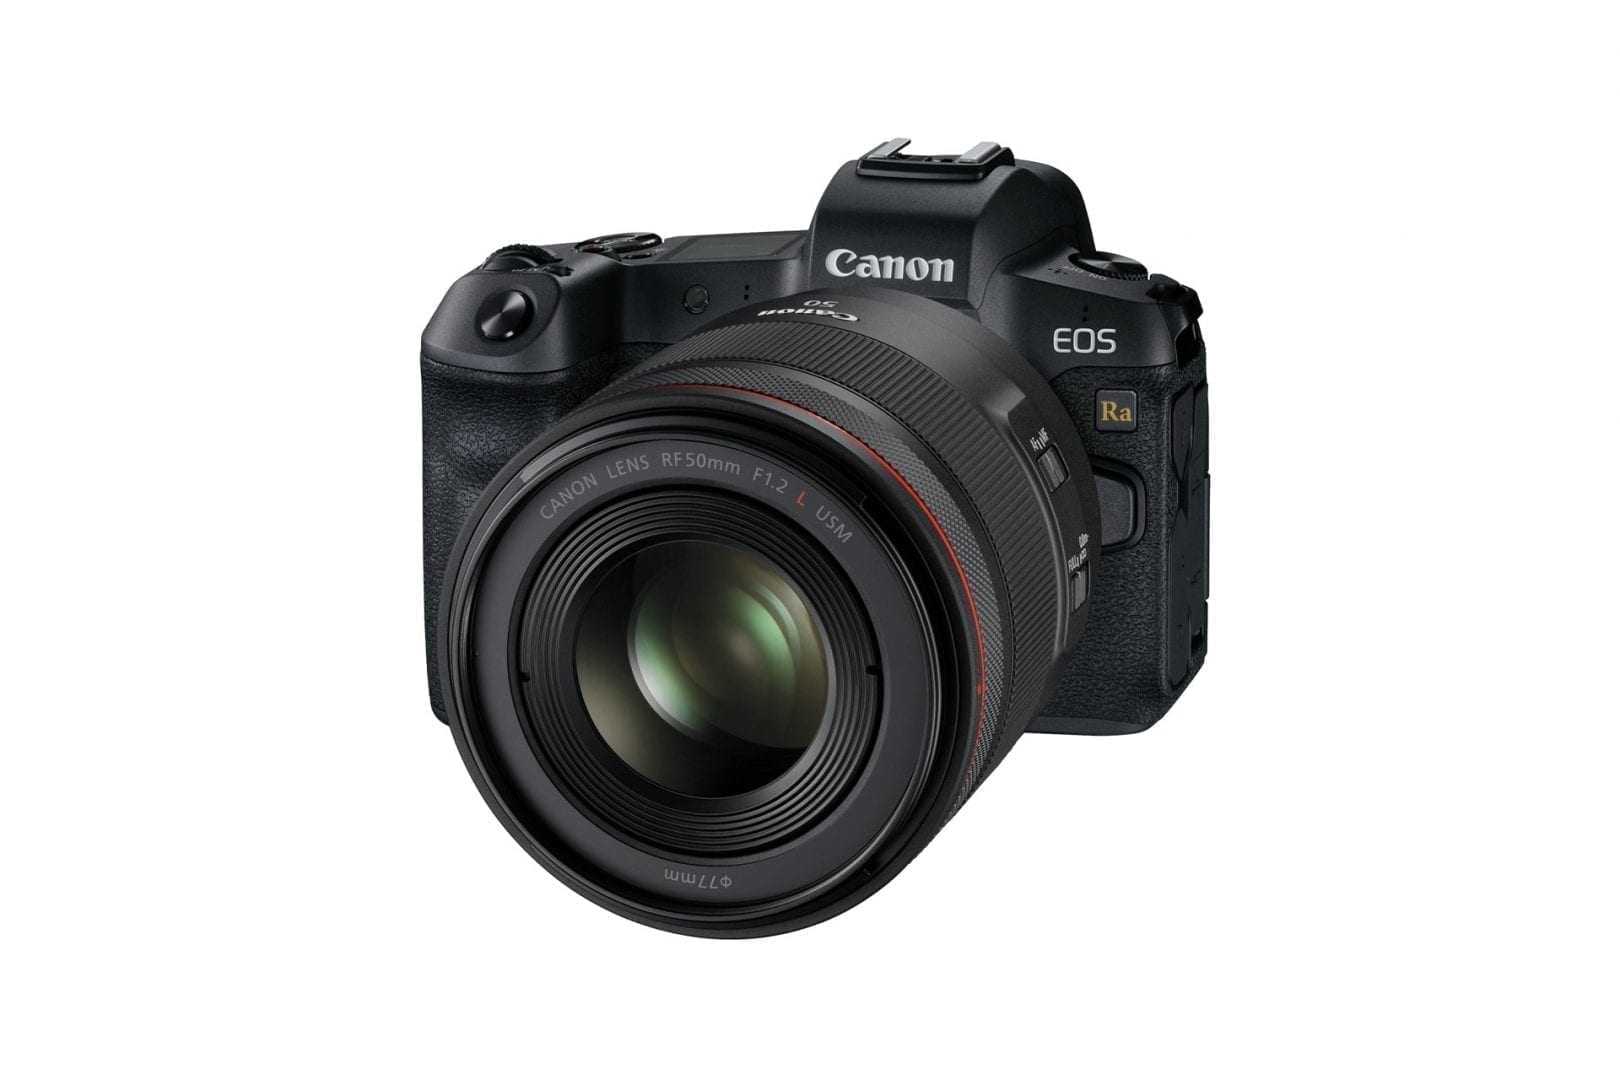 Canon EOS Ra – Full Frame κατασκευασμένη για αστροφωτογραφία